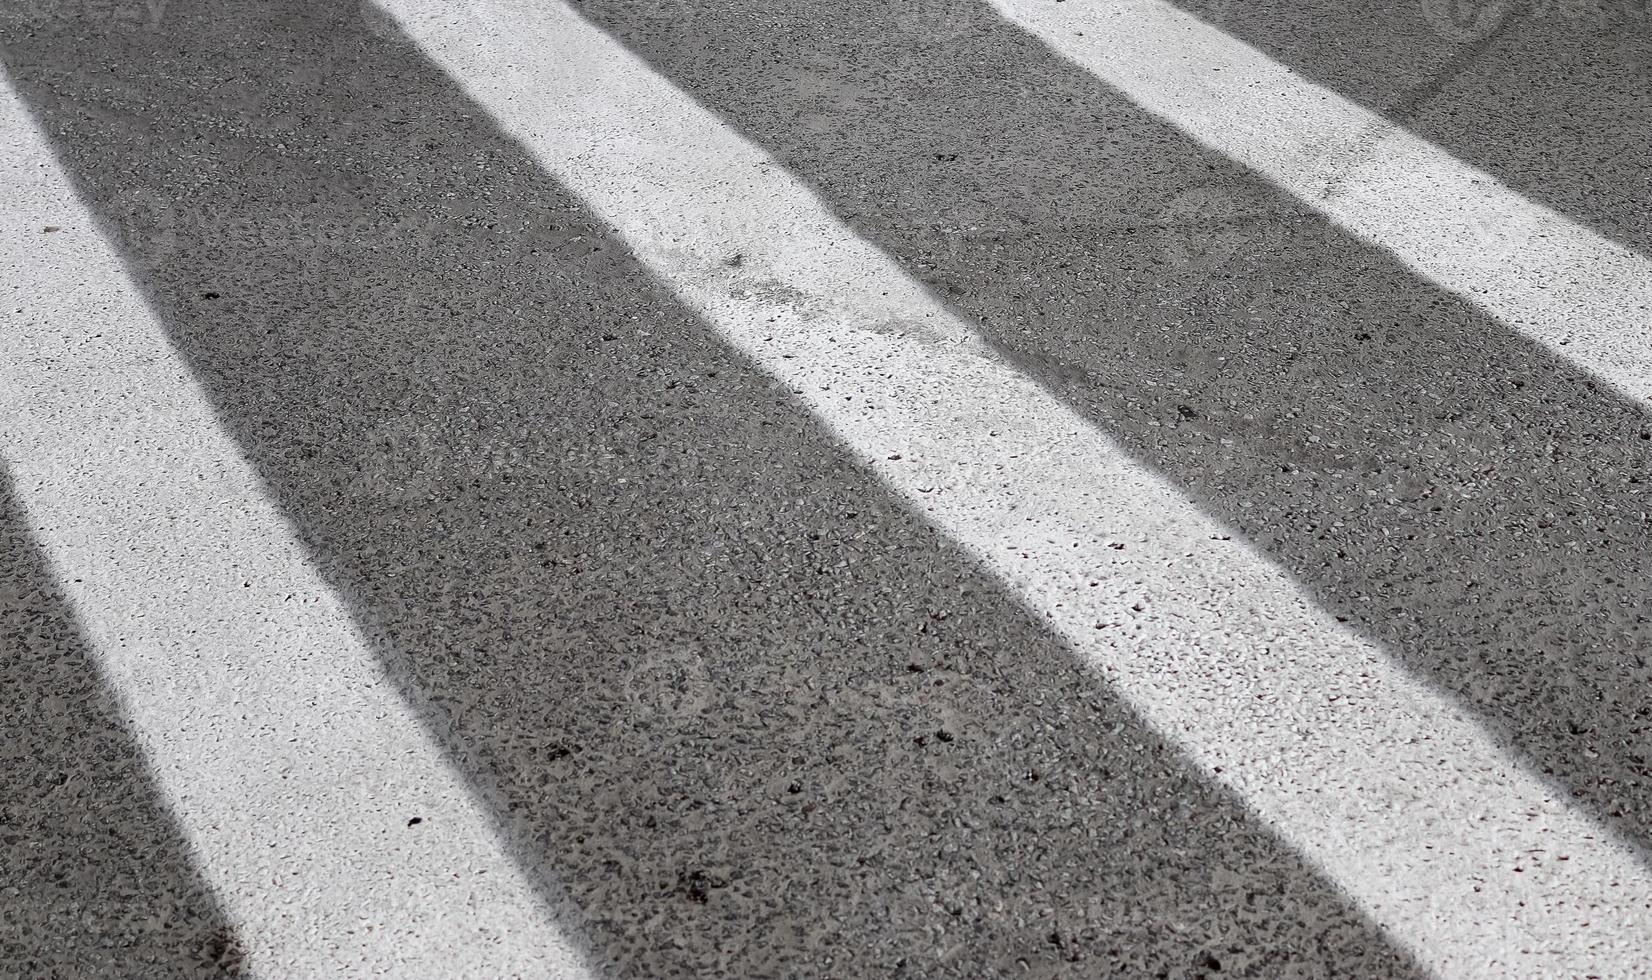 dettagliato Visualizza su asfalto superfici di diverso strade e strade con crepe foto